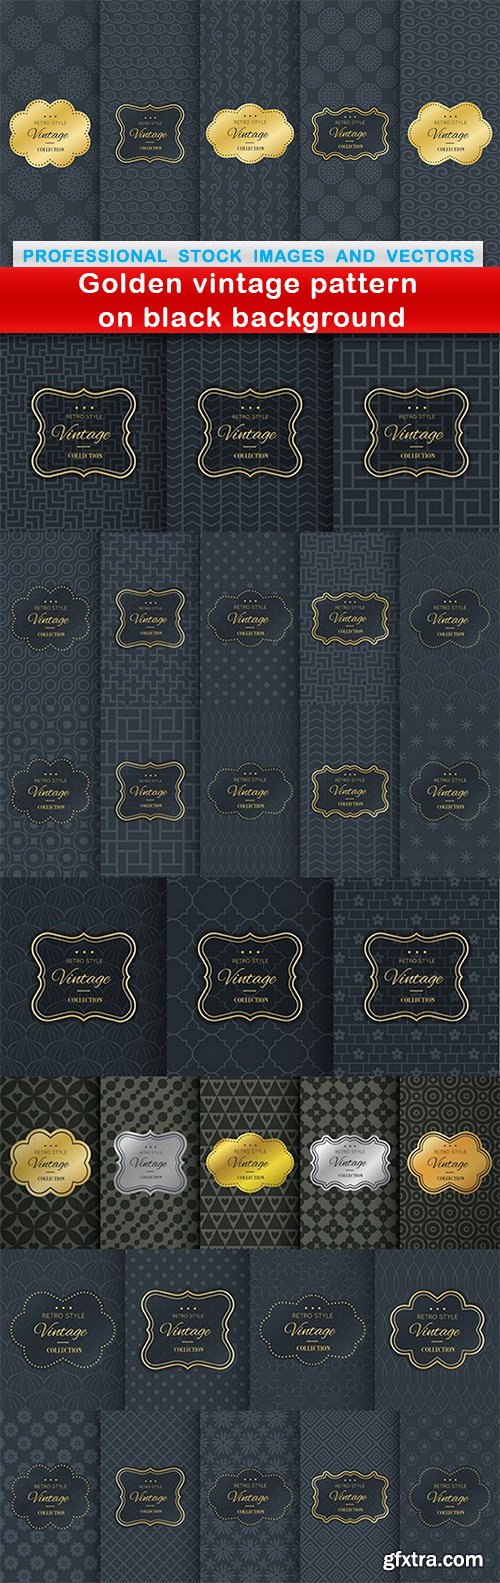 Golden vintage pattern on black background - 8 EPS